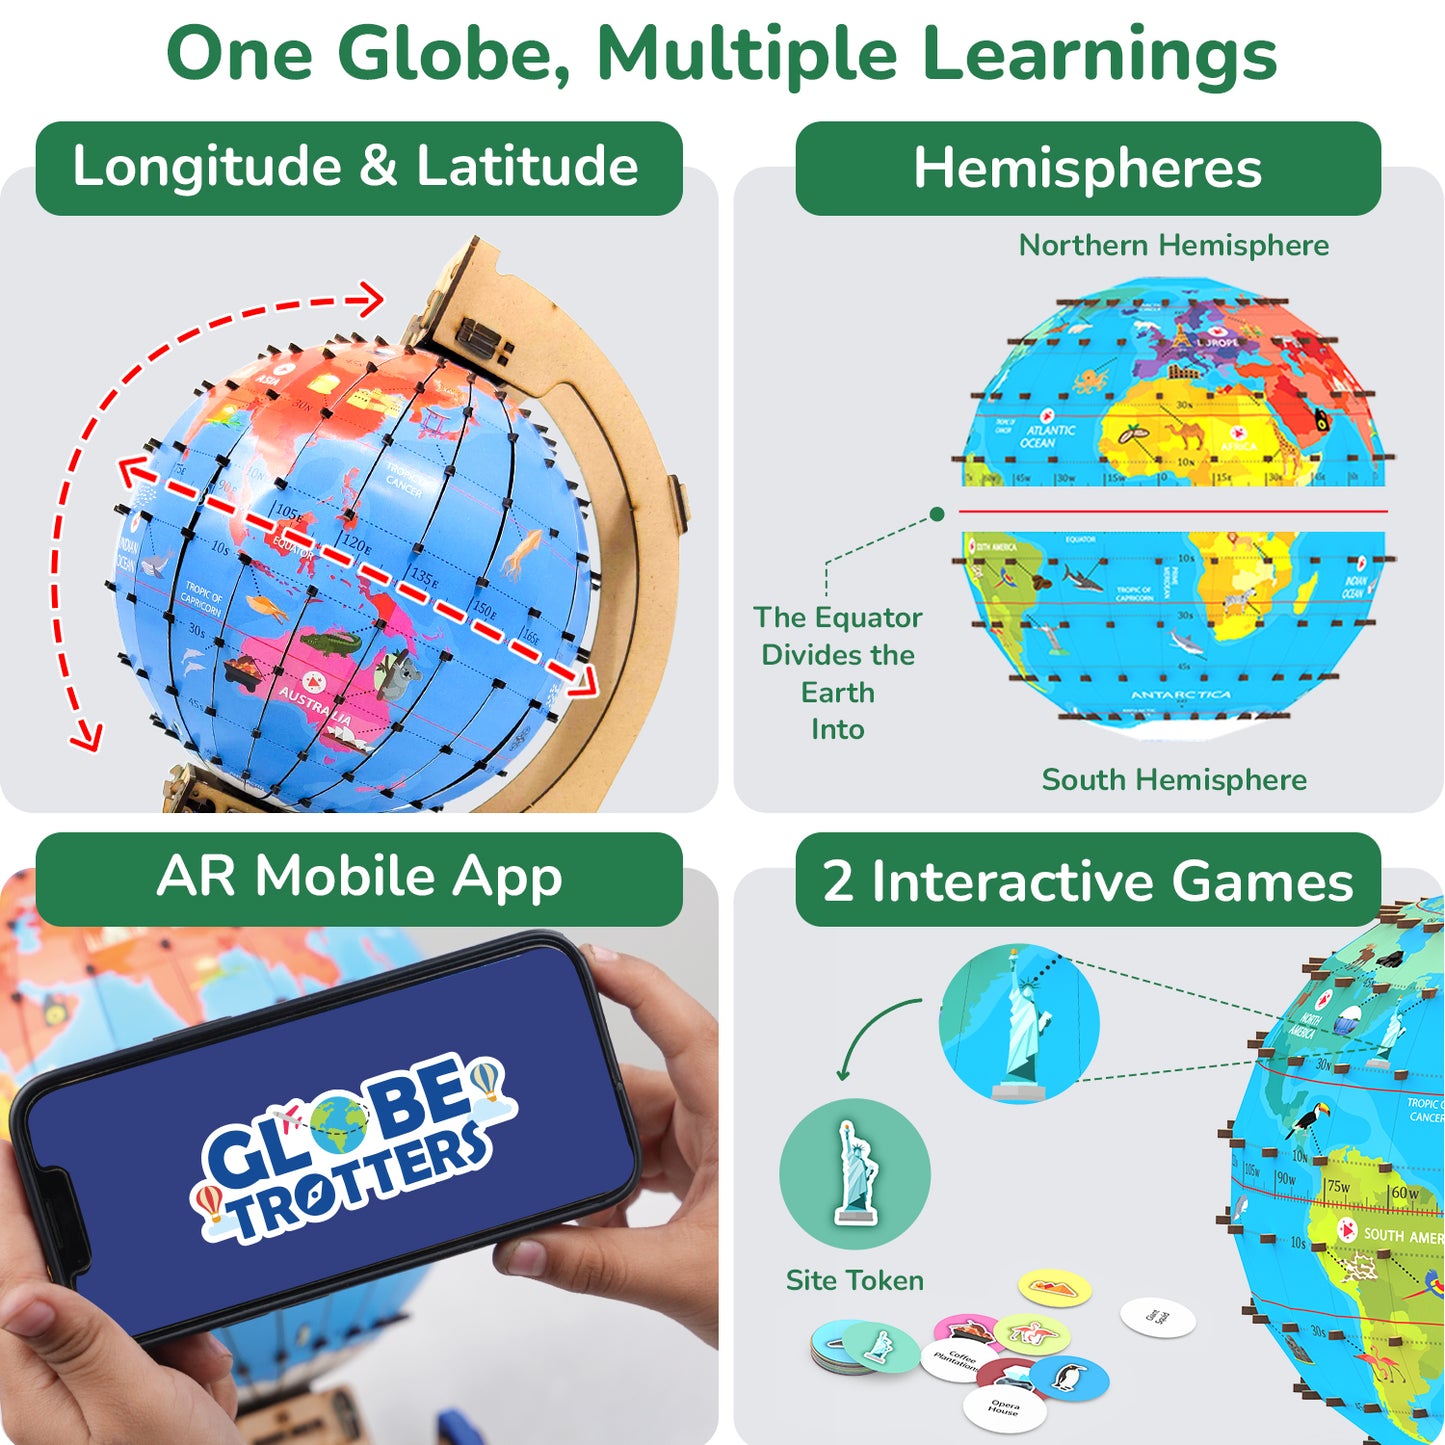 Smartivity Globe Trotters 環遊世界地球儀桌上遊戲